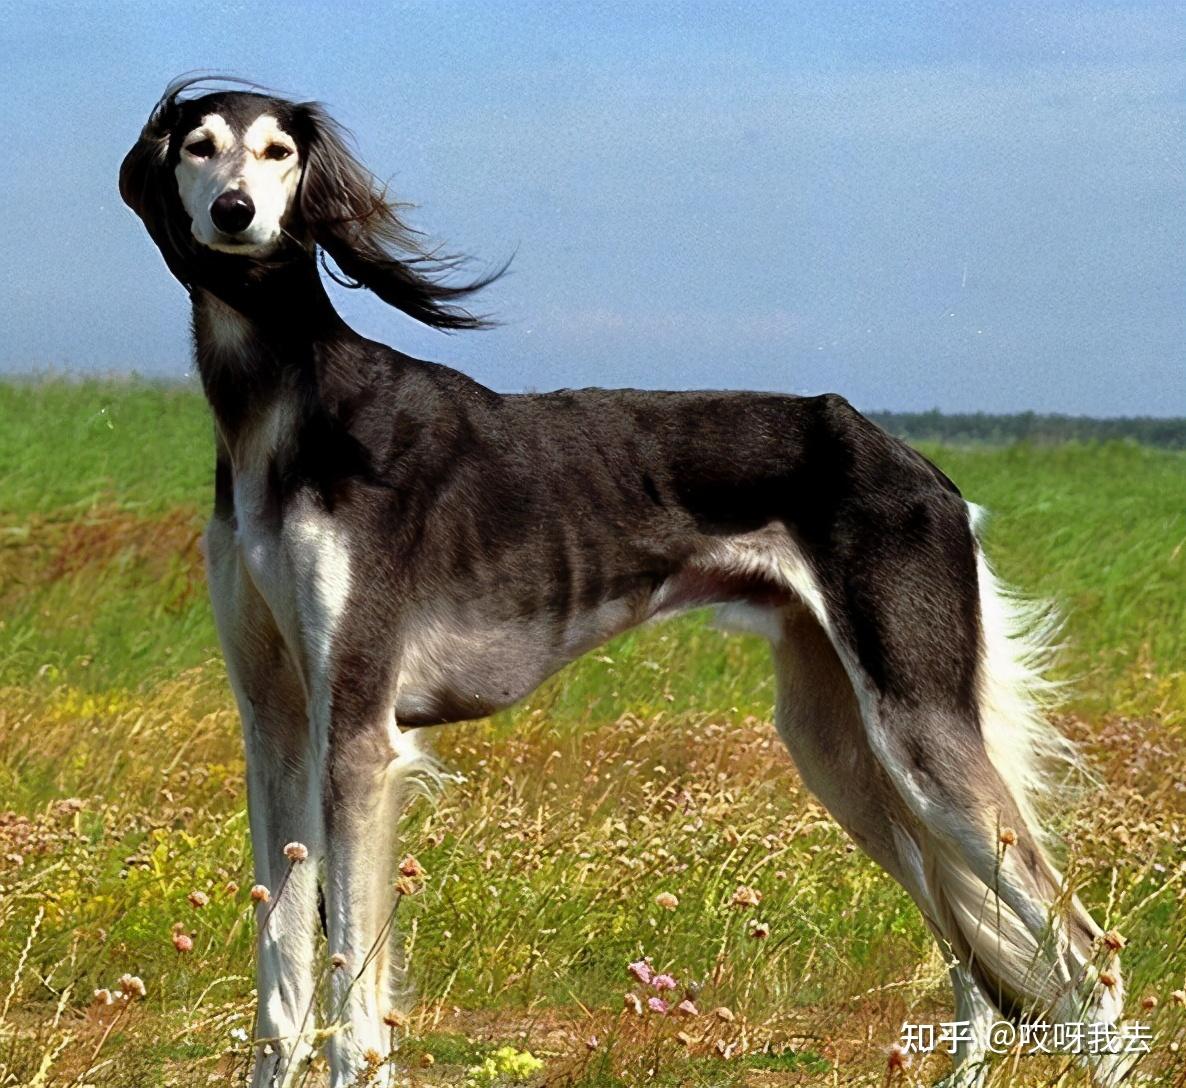 细犬身材修长,尤其是它的四条腿,十分的纤细,给人一种充满了力量的